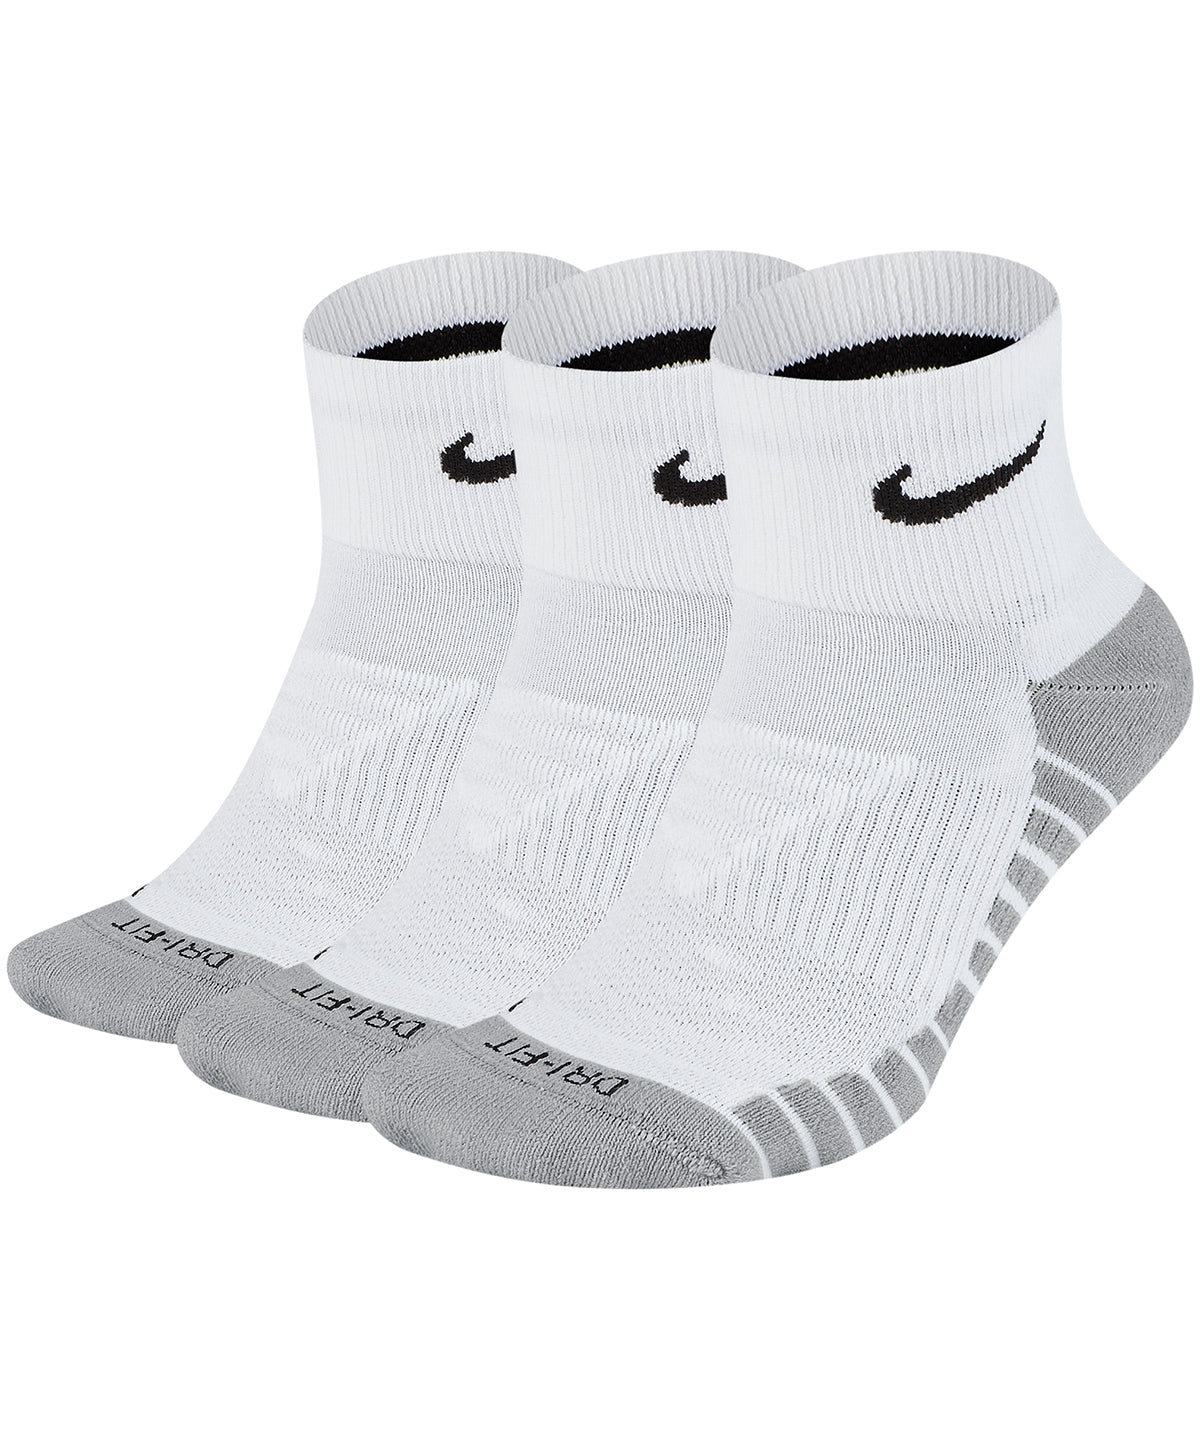 3-pack Nike everyday max cushioned sokkar